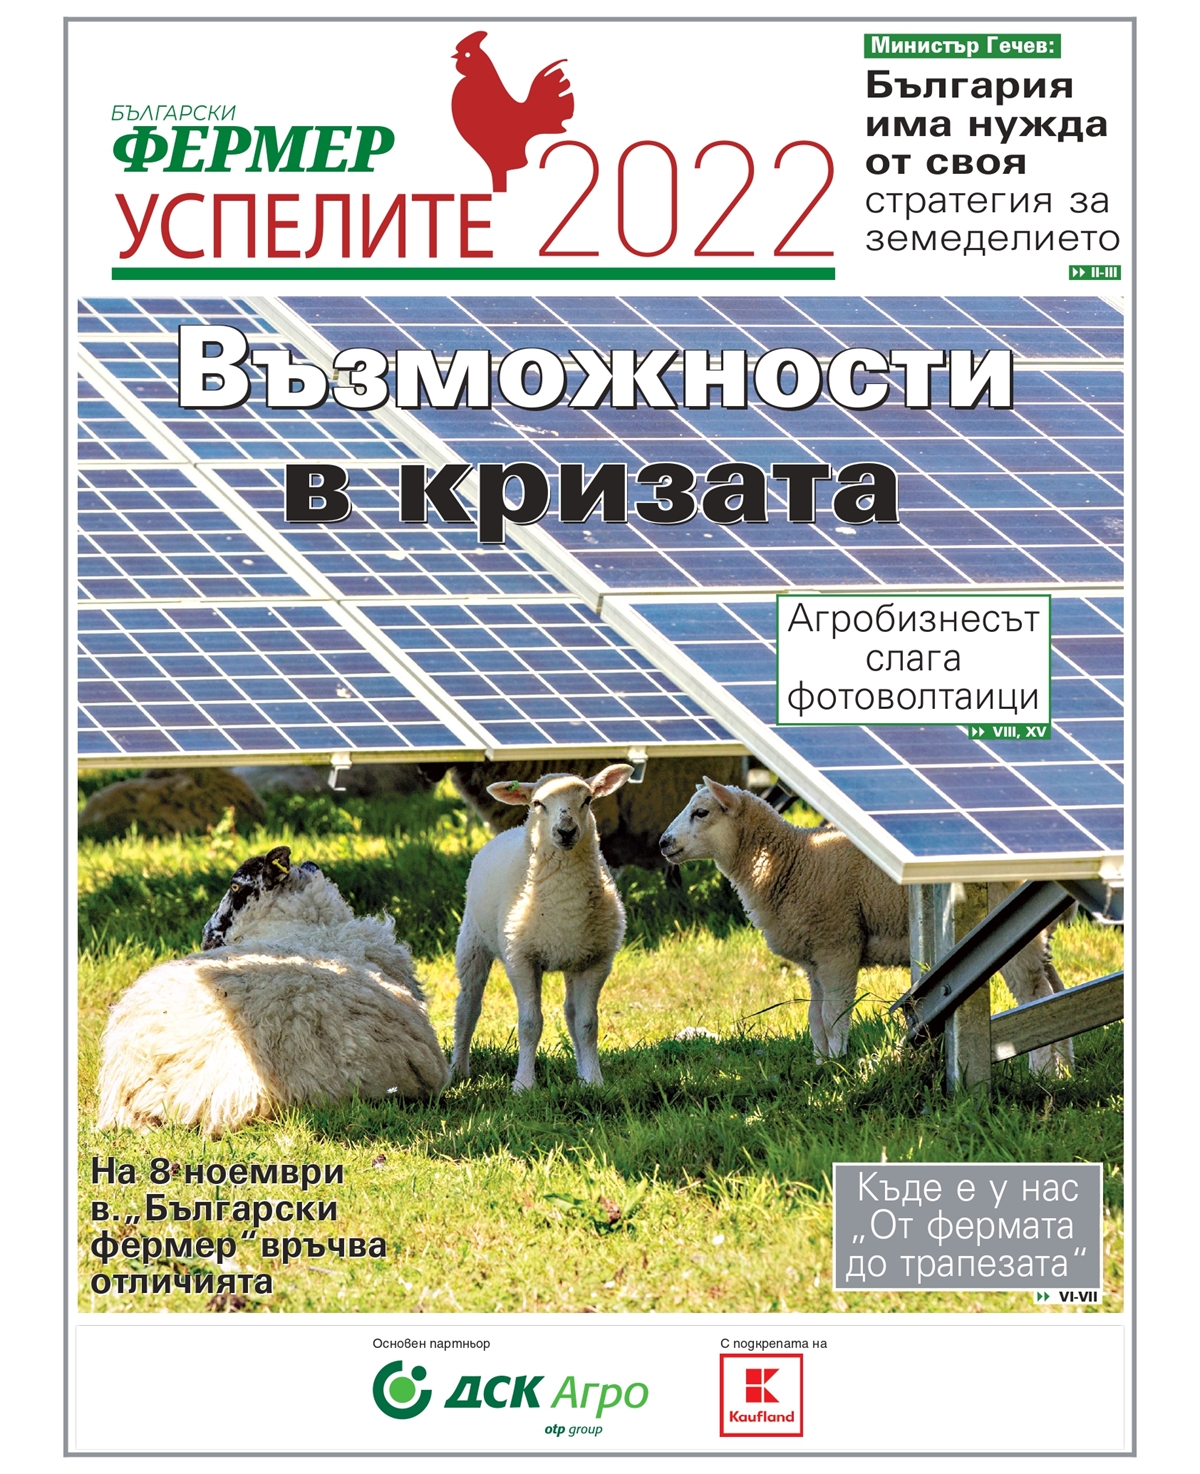 "Български фермер: Успелите 2022" - изтегли от тук приложението